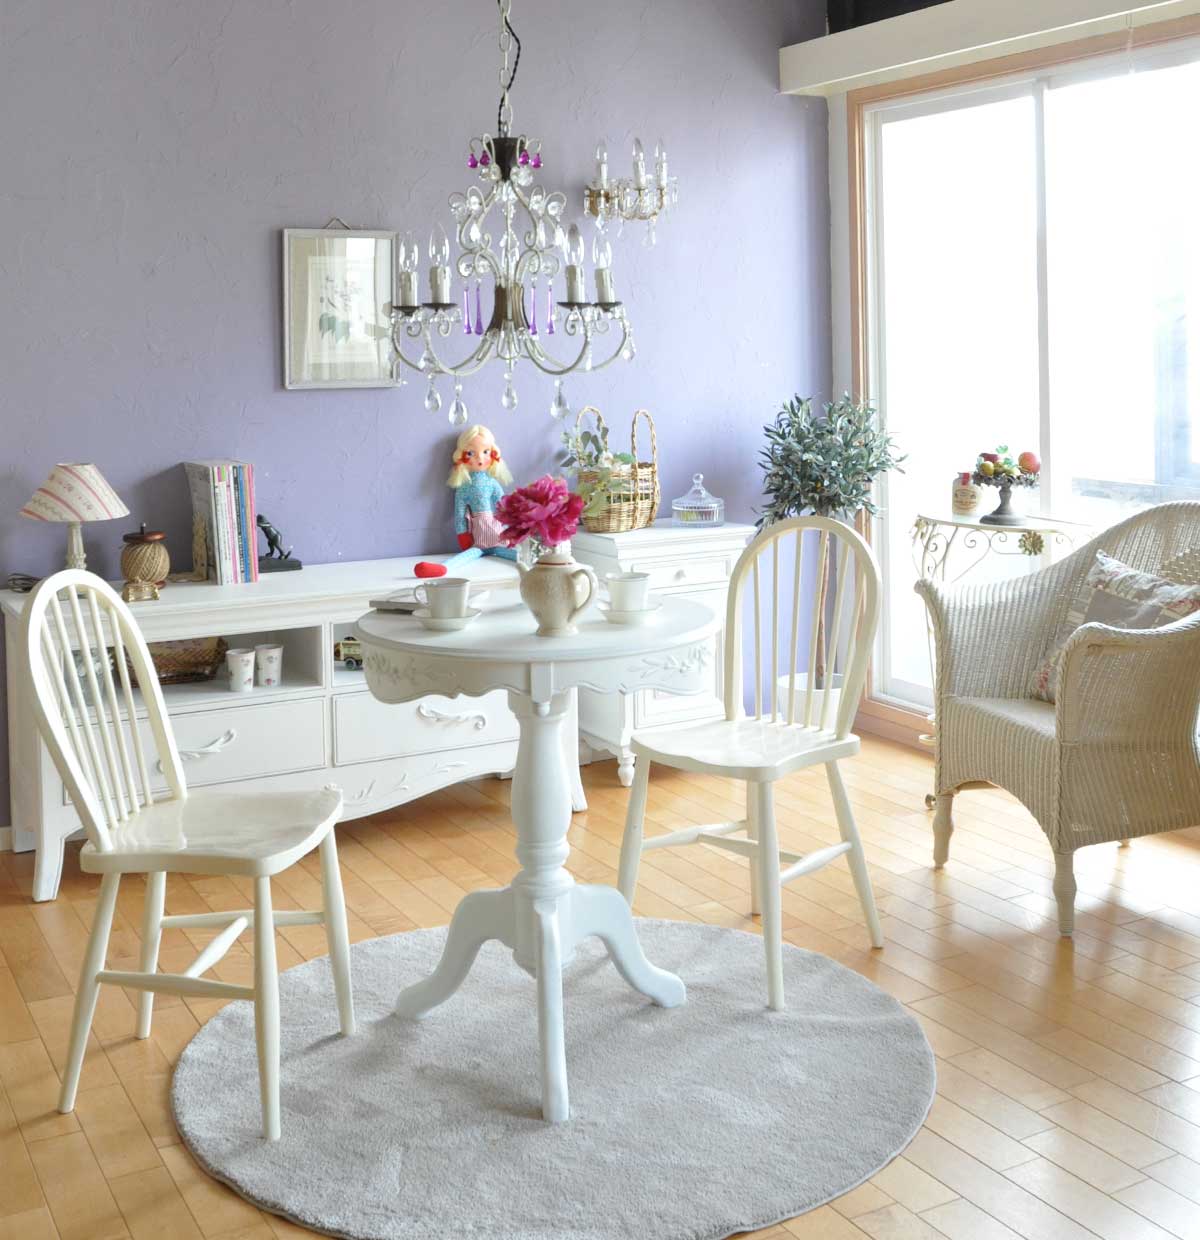 フレンチエレガントのリビング | 真っ白い家具で統一した爽やかなリビング